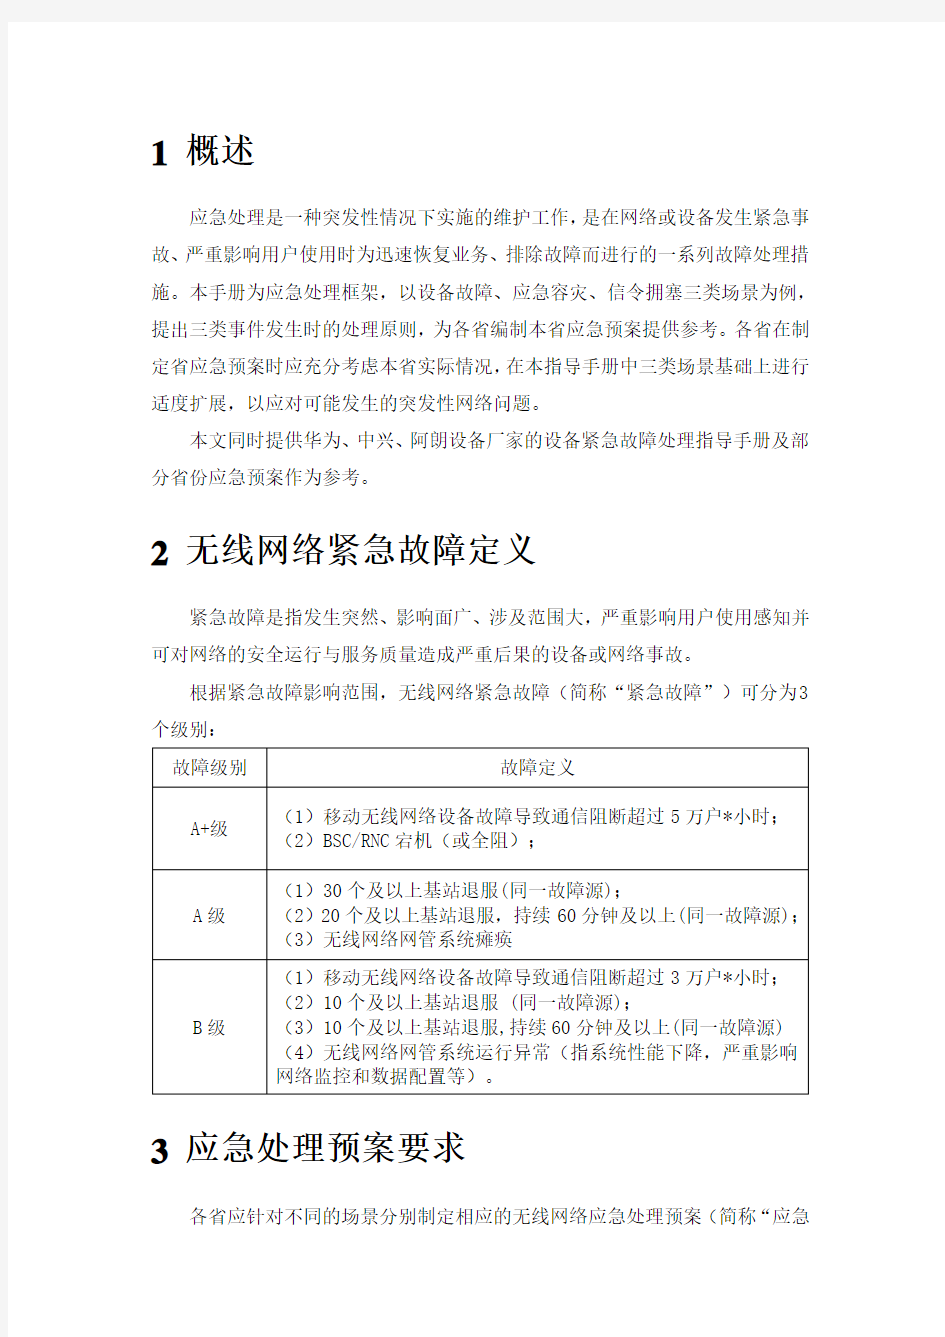 中国电信无线网络应急指导手册